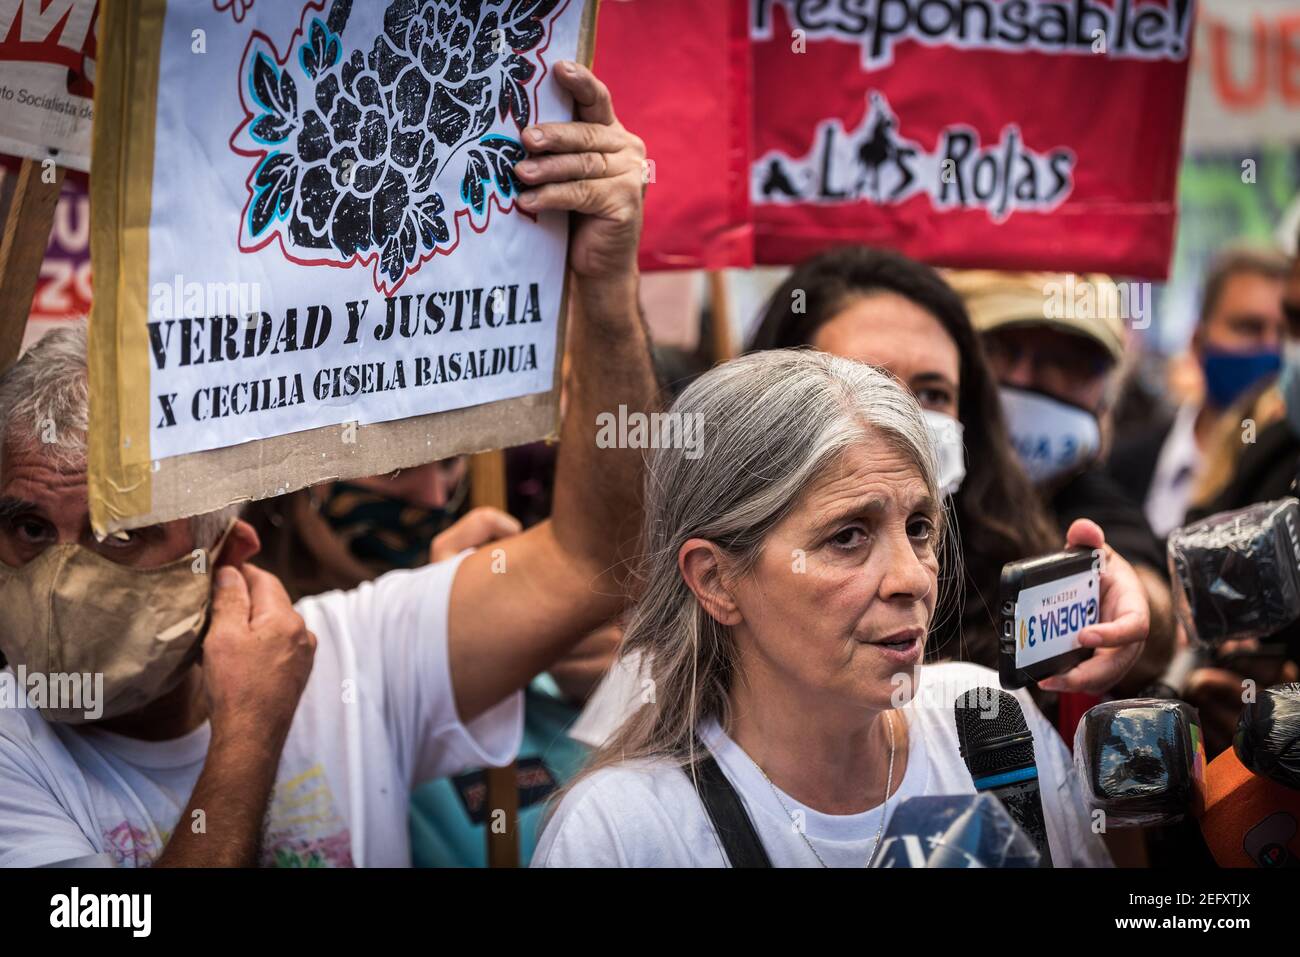 La madre di Úrsula Bahillo parla alla stampa durante la manifestazione. Il movimento femminista "Ni una Menos" si è concentrato presso il Tribunale in ripudio della reazione della giustizia, dopo il femminicidio di Úrsula perpetrato da Matías Martínez nella città di Rojas, Buenos Aires. Foto Stock